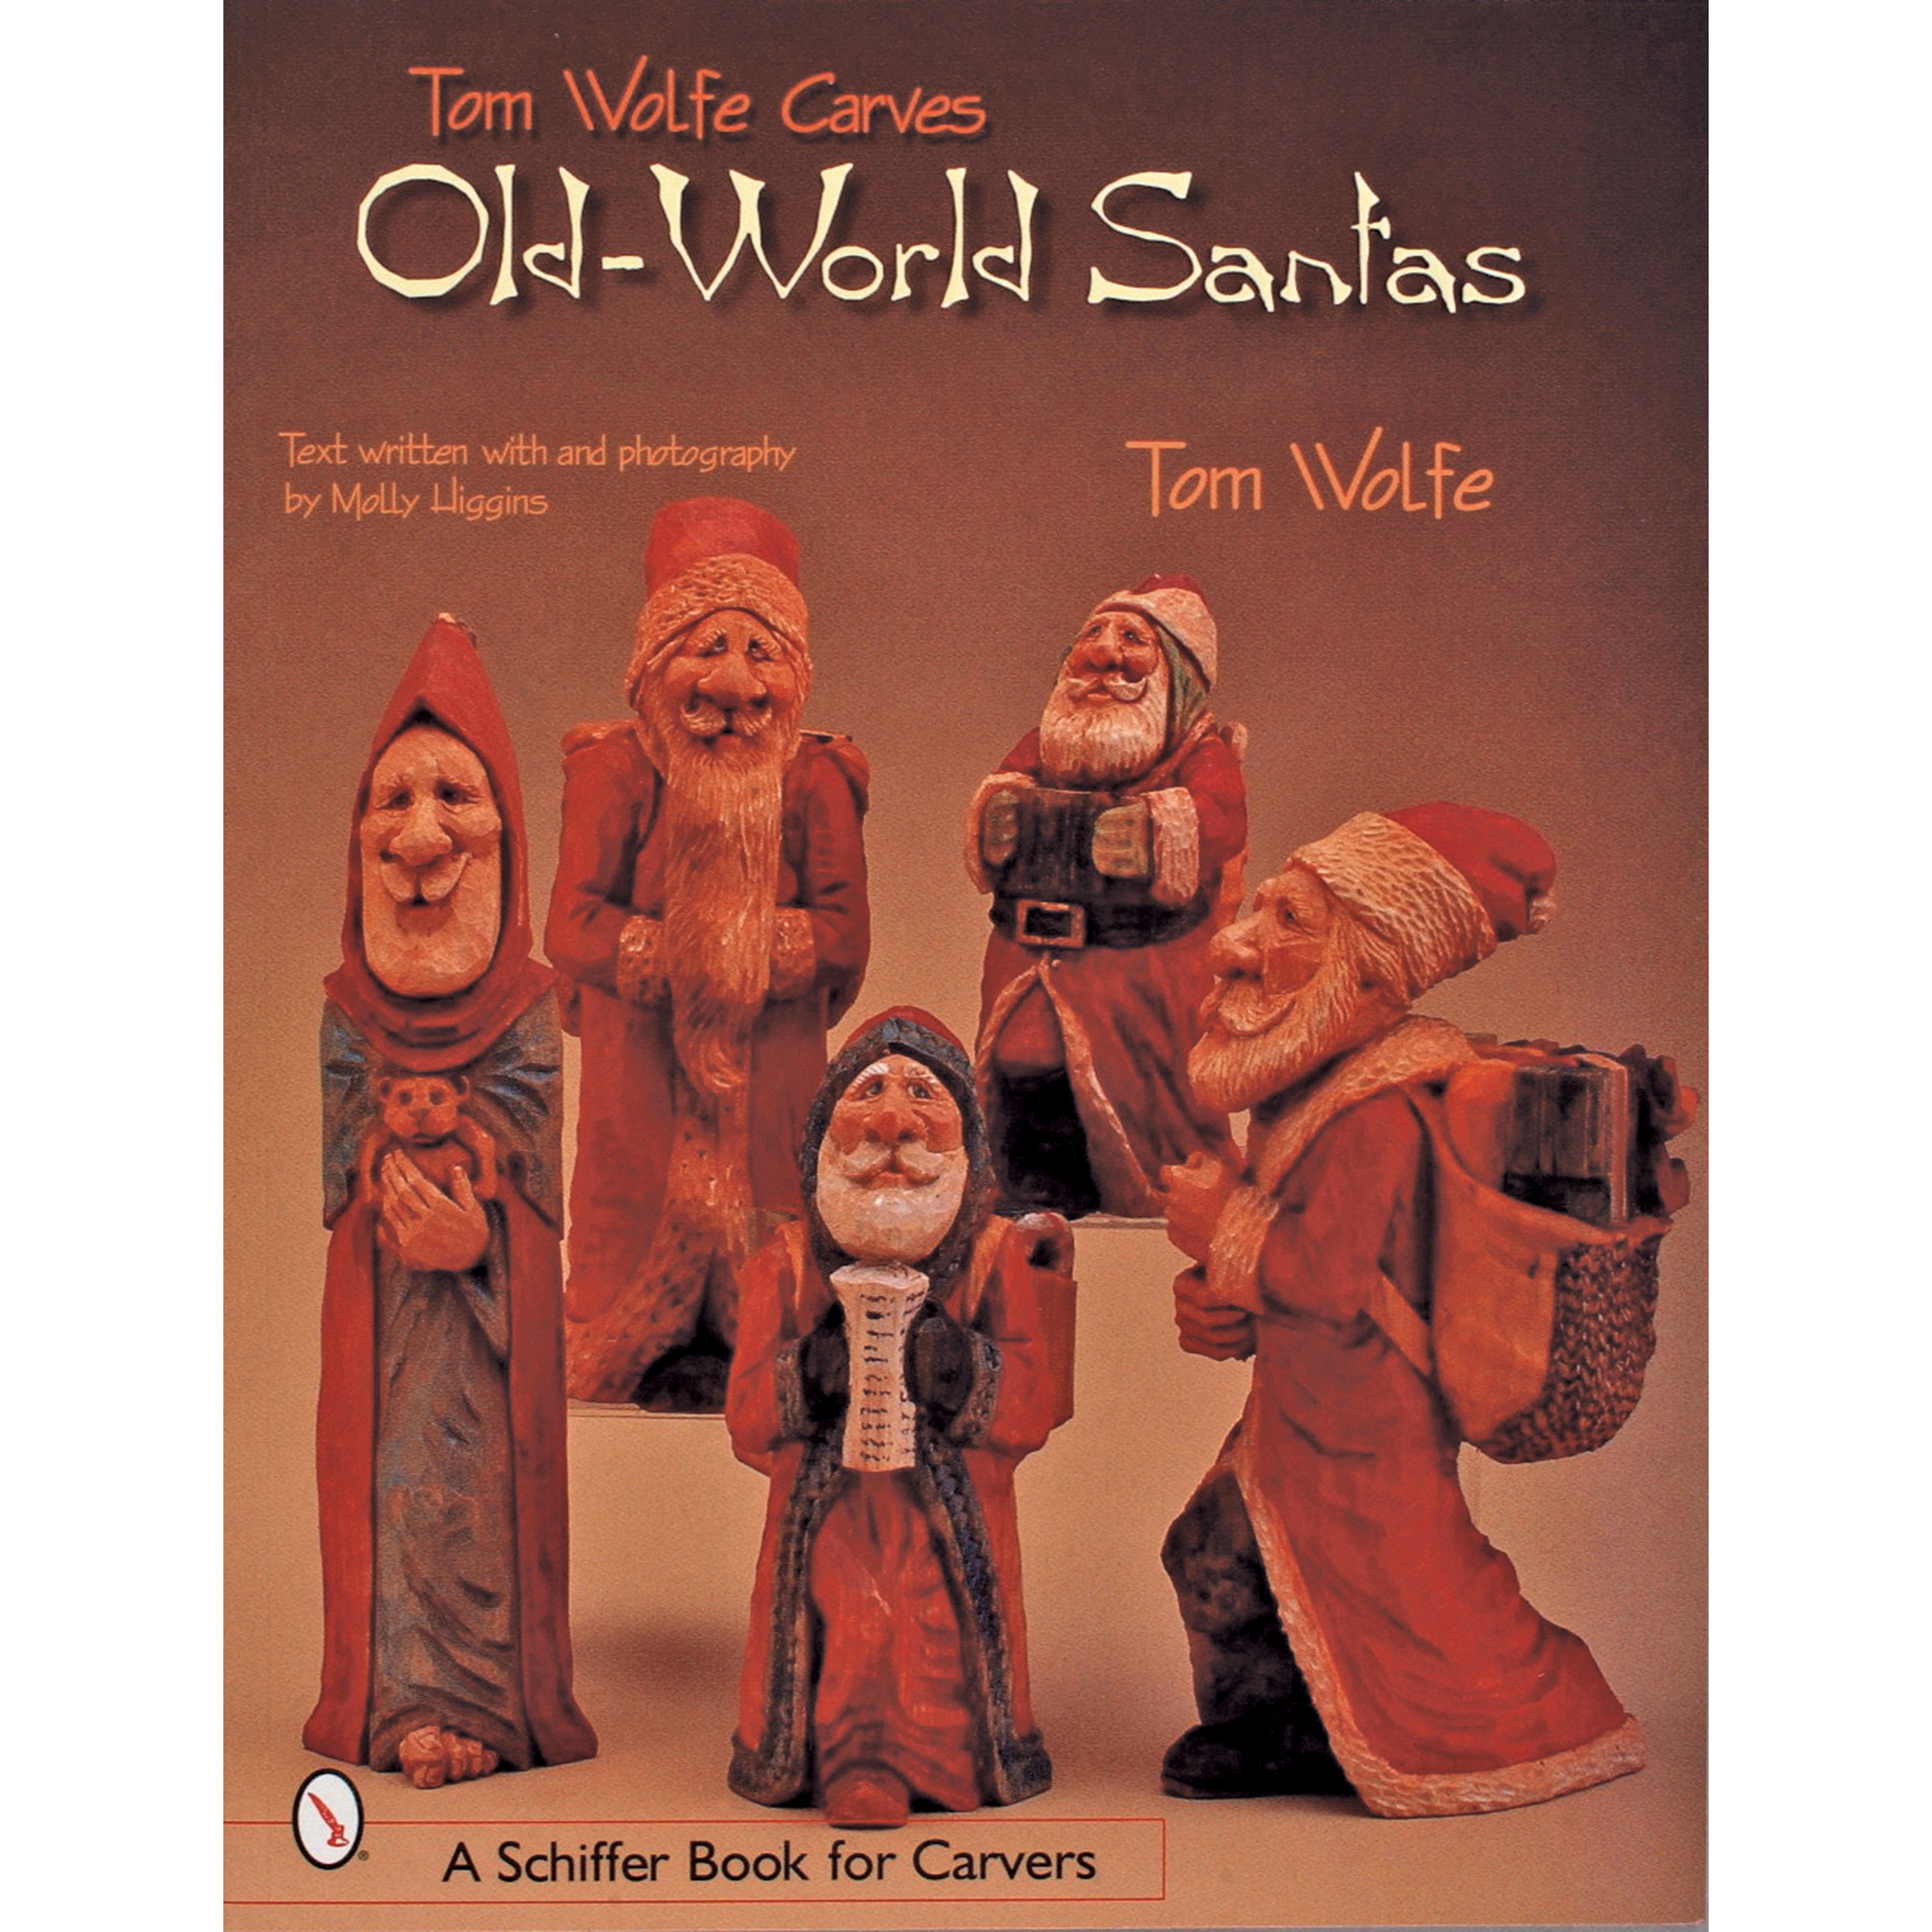 Tom Wolfe Carves Old World Santas